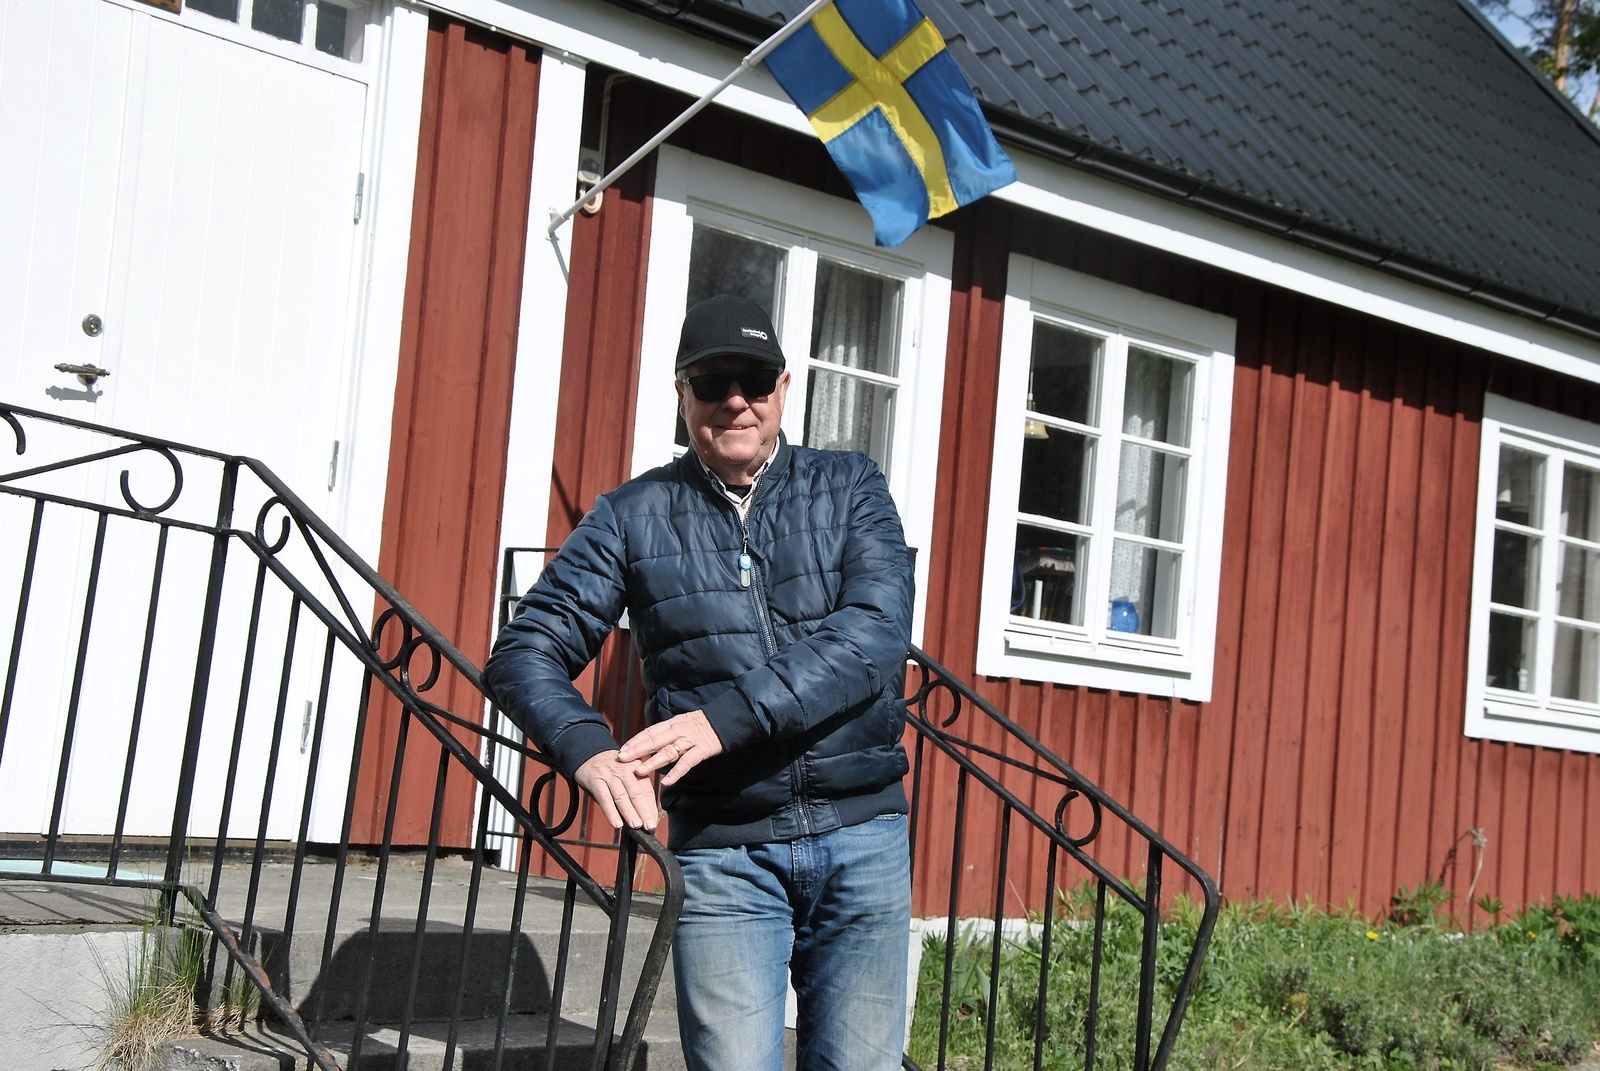 Glimåkra hembygdsförenings ordförande Sven Nilsson berättar att de har många projekt på gång.